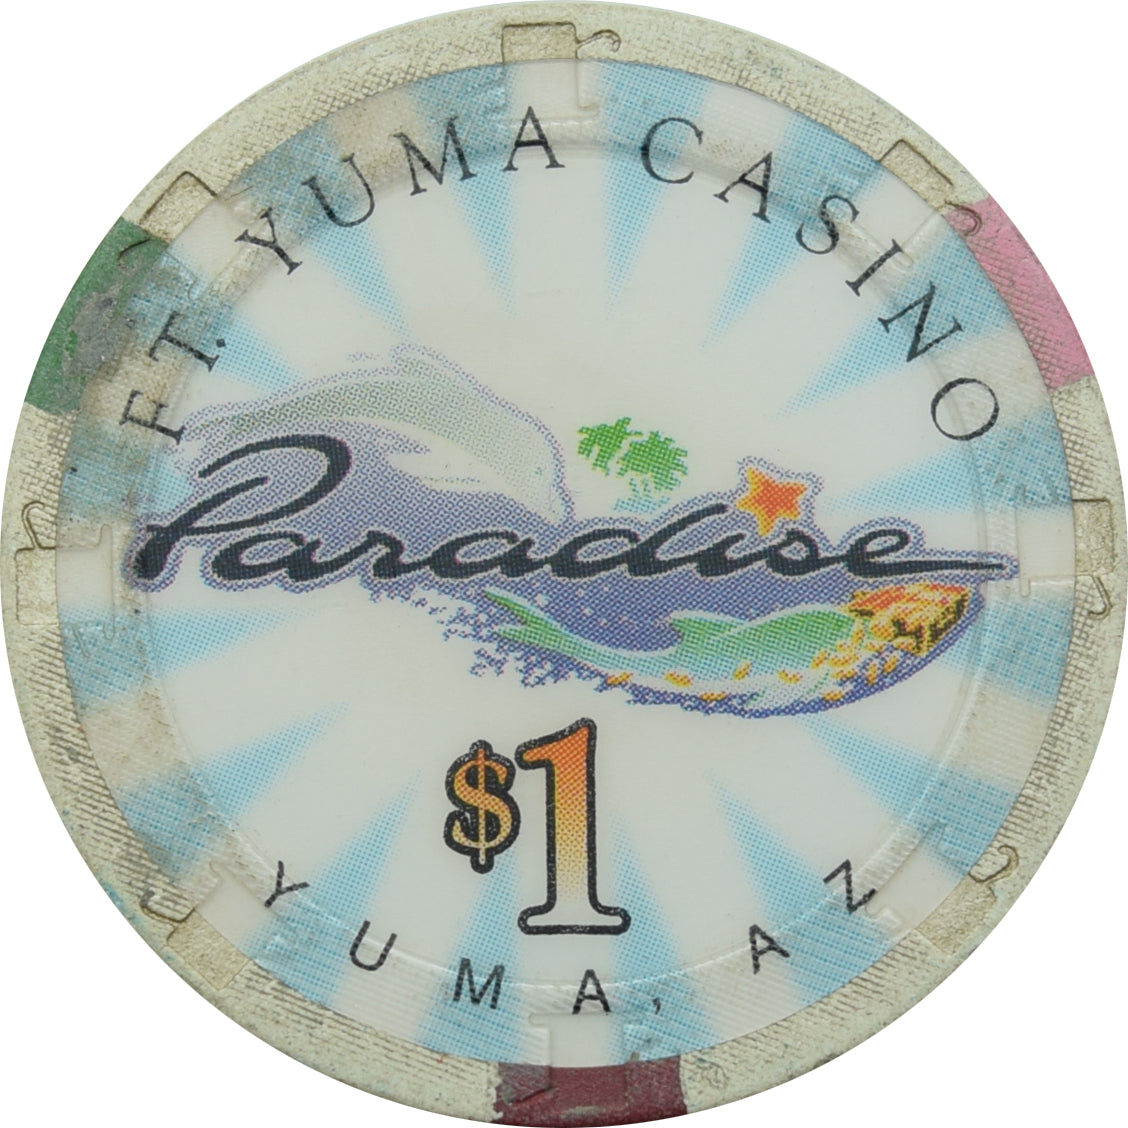 paradise casino yuma az